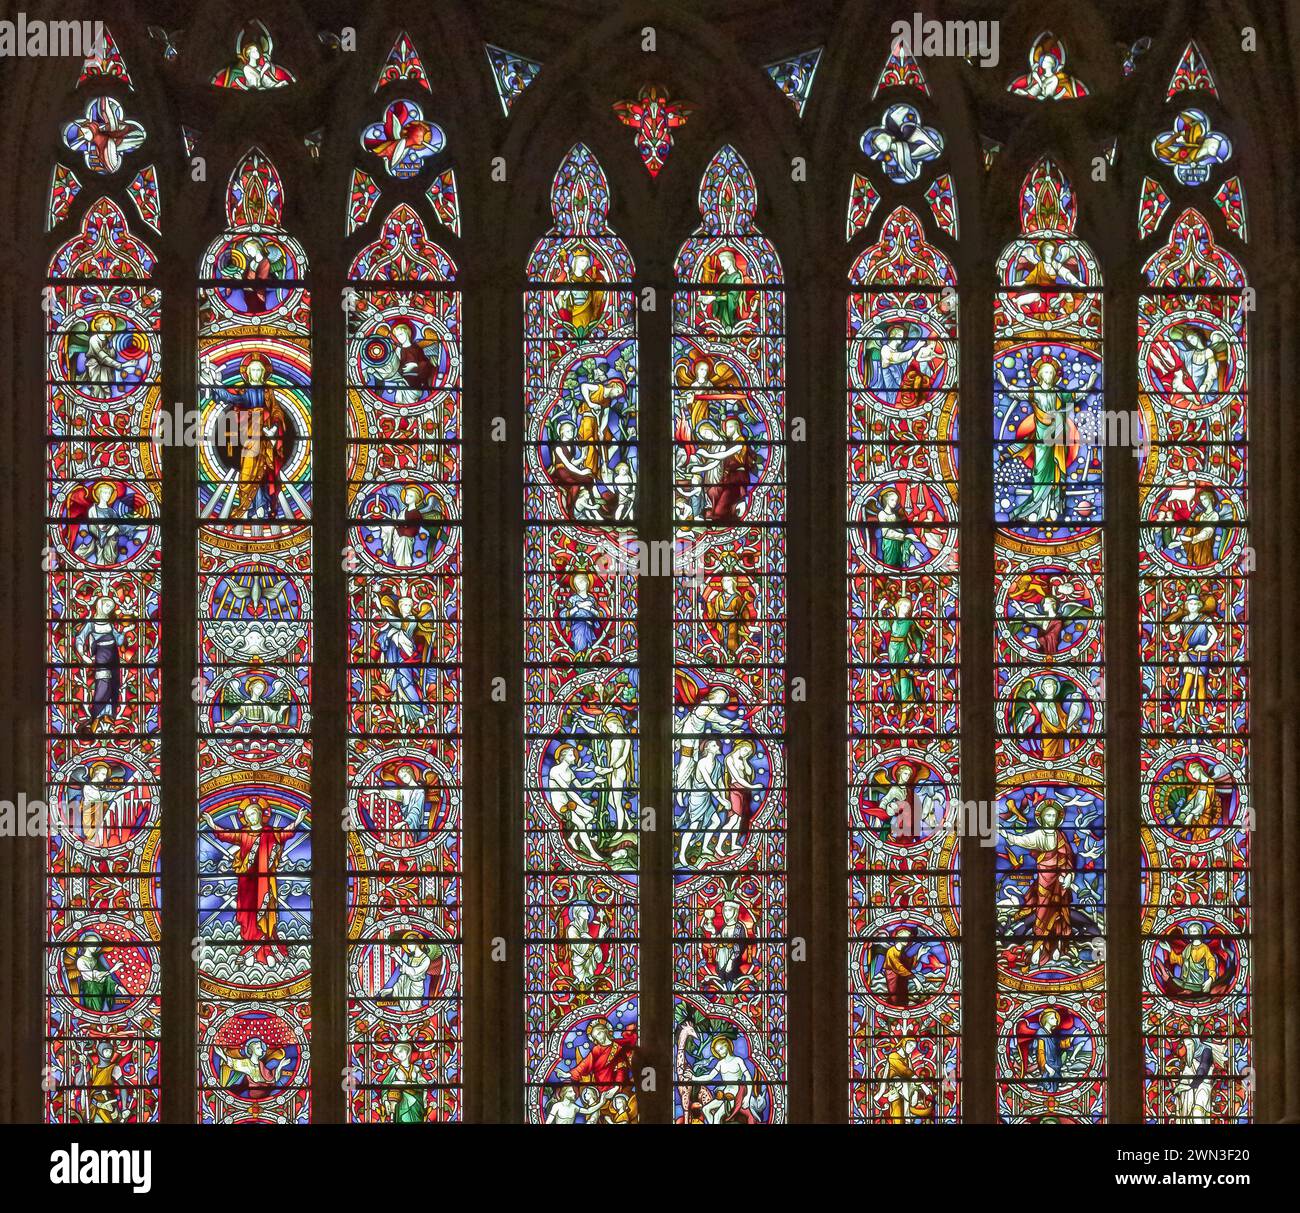 Una splendida vetrata raffigurante scene religiose situata nella cattedrale di Worcester. Cristianesimo, religione, concetto di fede. Foto Stock